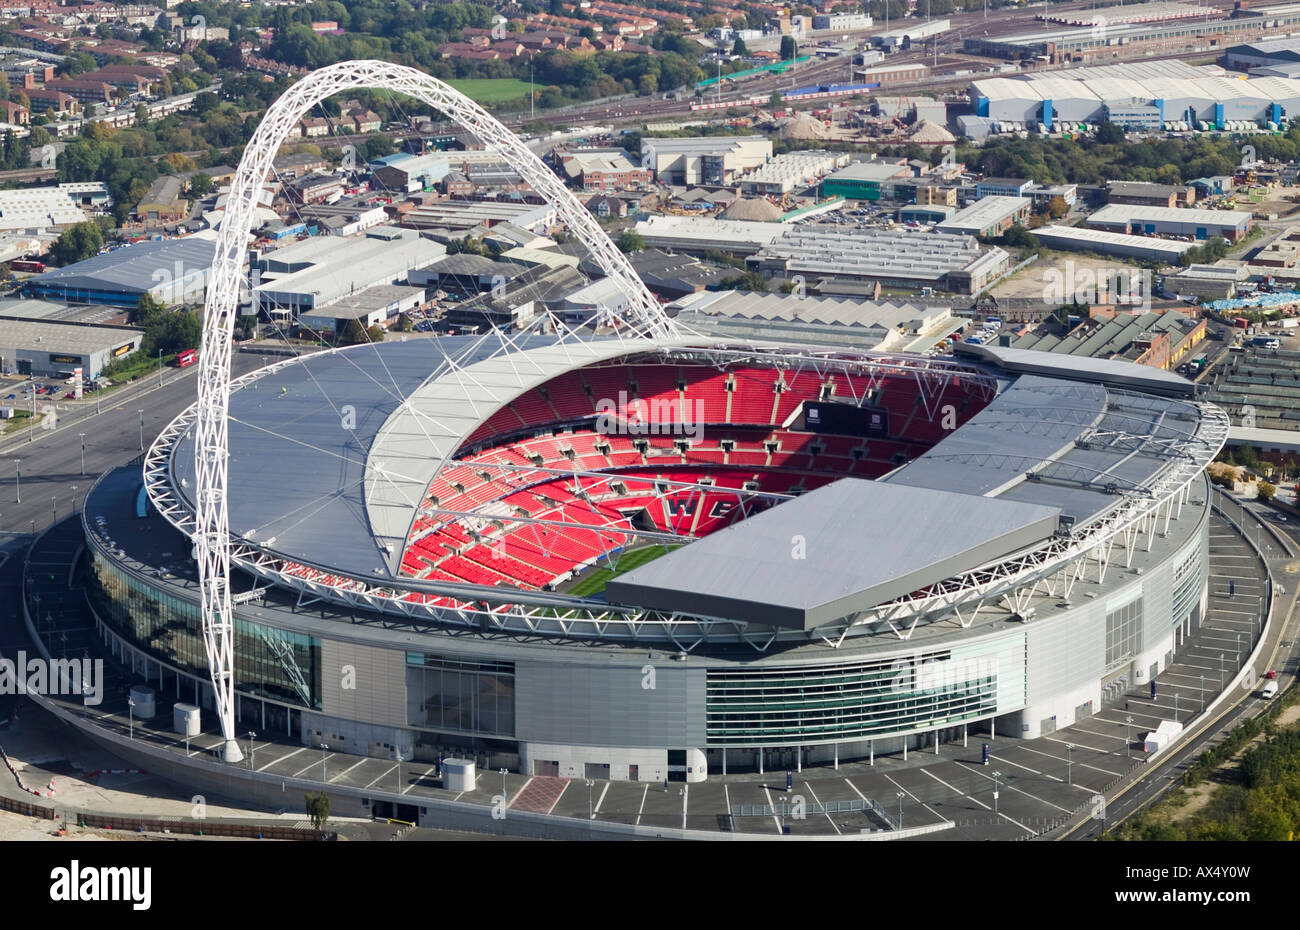 Le stade de Wembley. Photographie aérienne Banque D'Images